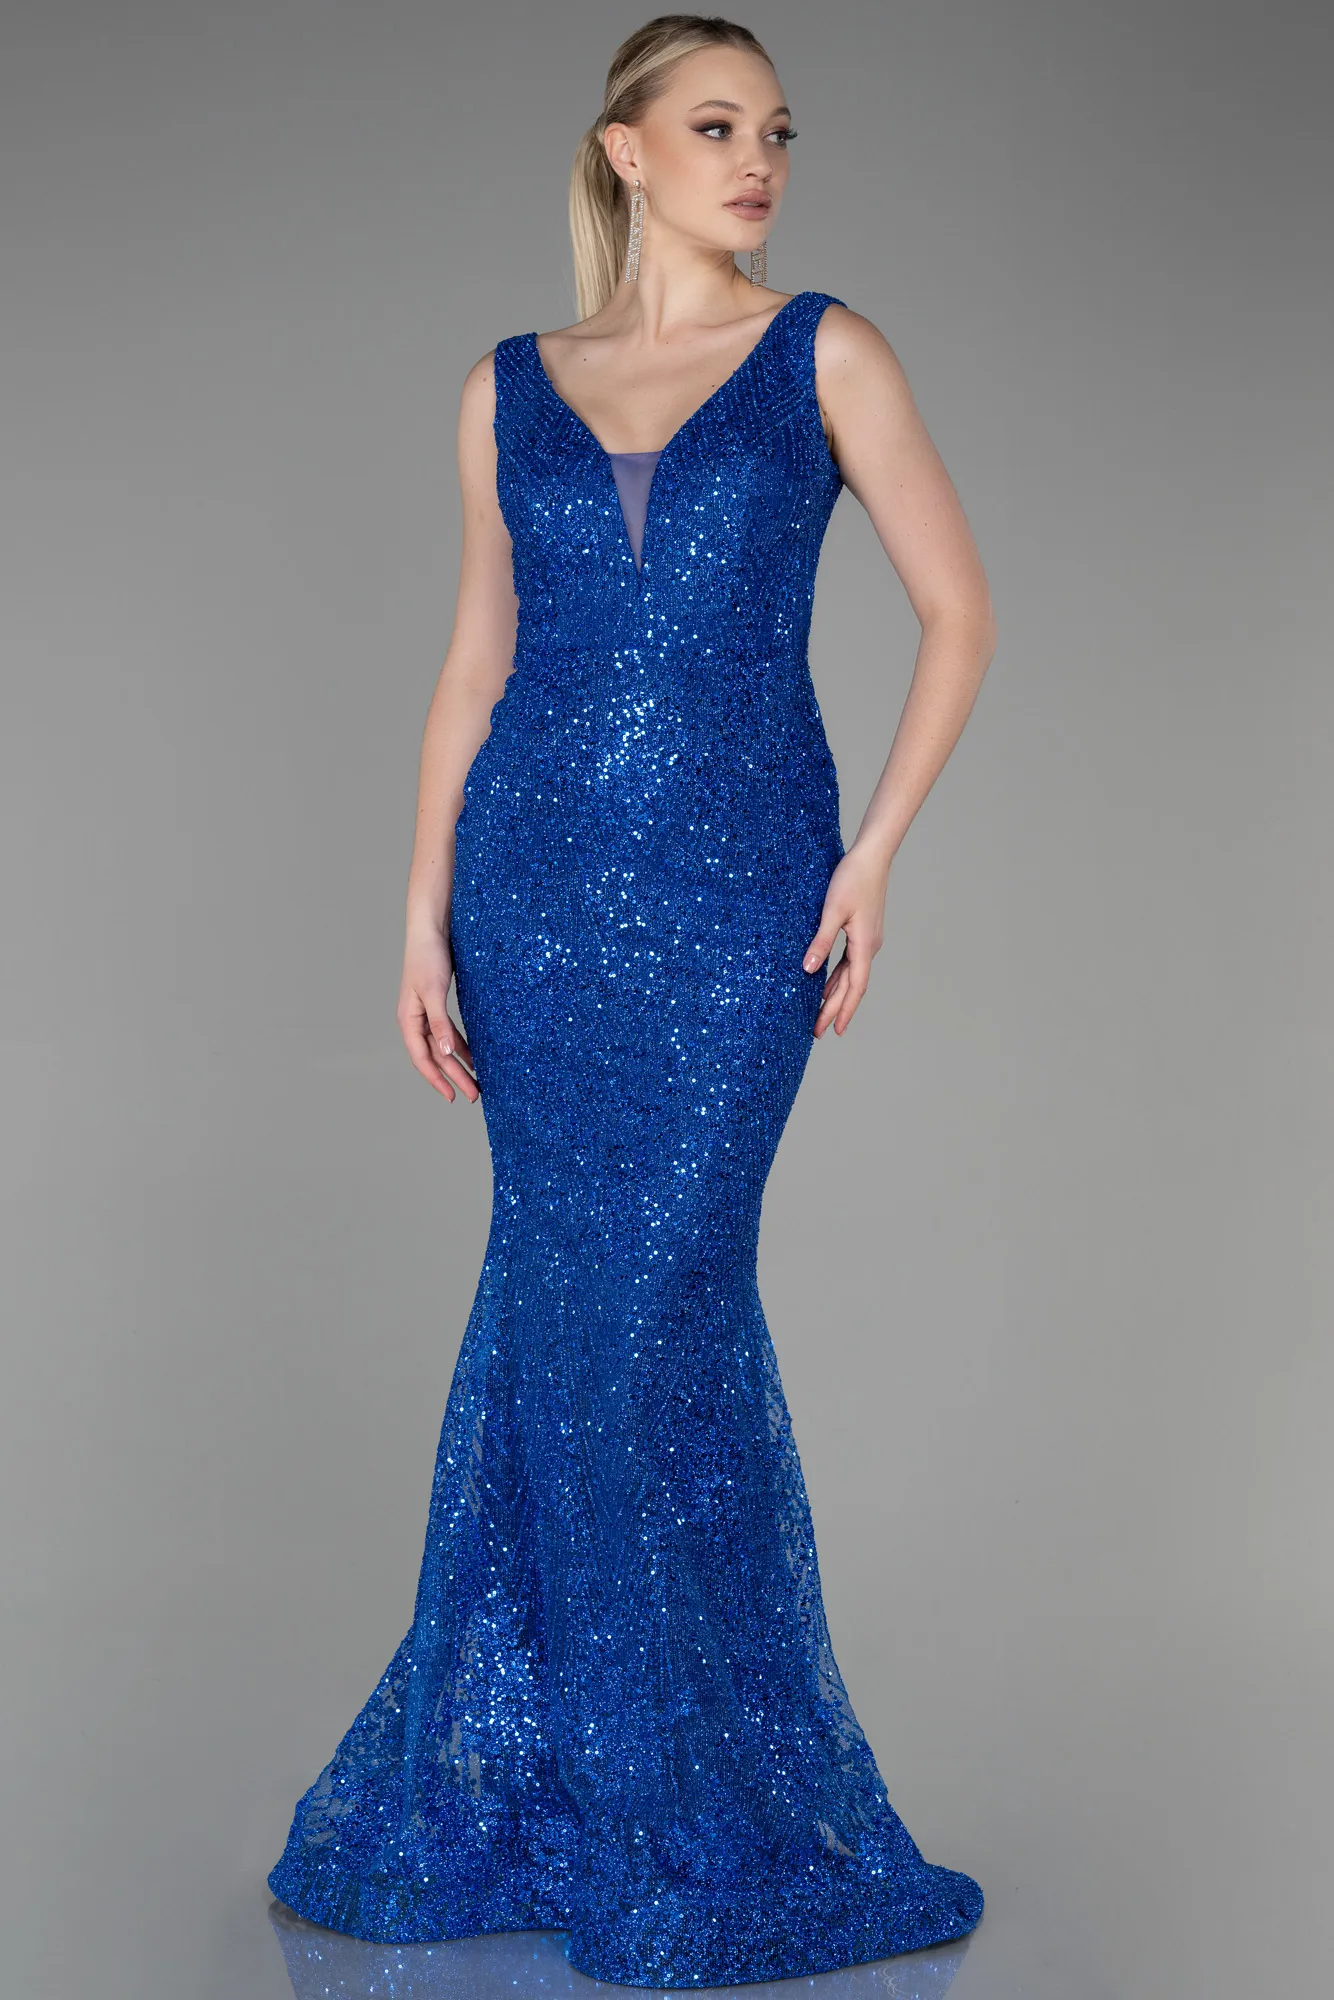 Sax Blue-Long Mermaid Prom Dress ABU3178